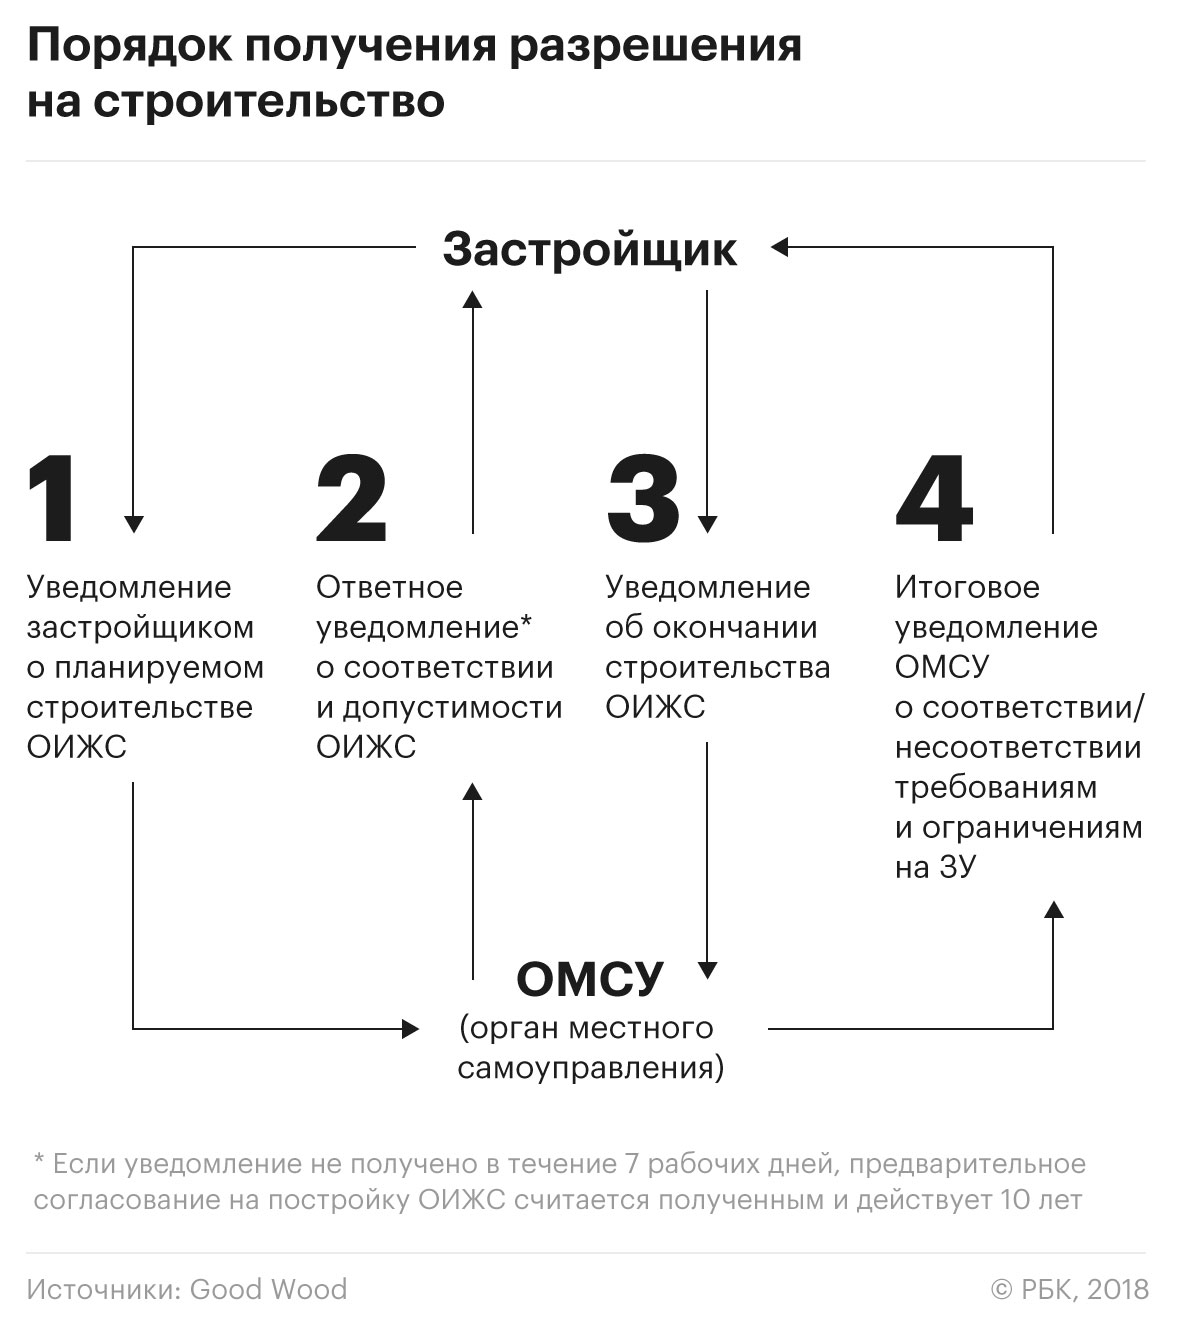 Как согласовать строительство частного дома в Москве. Инструкция